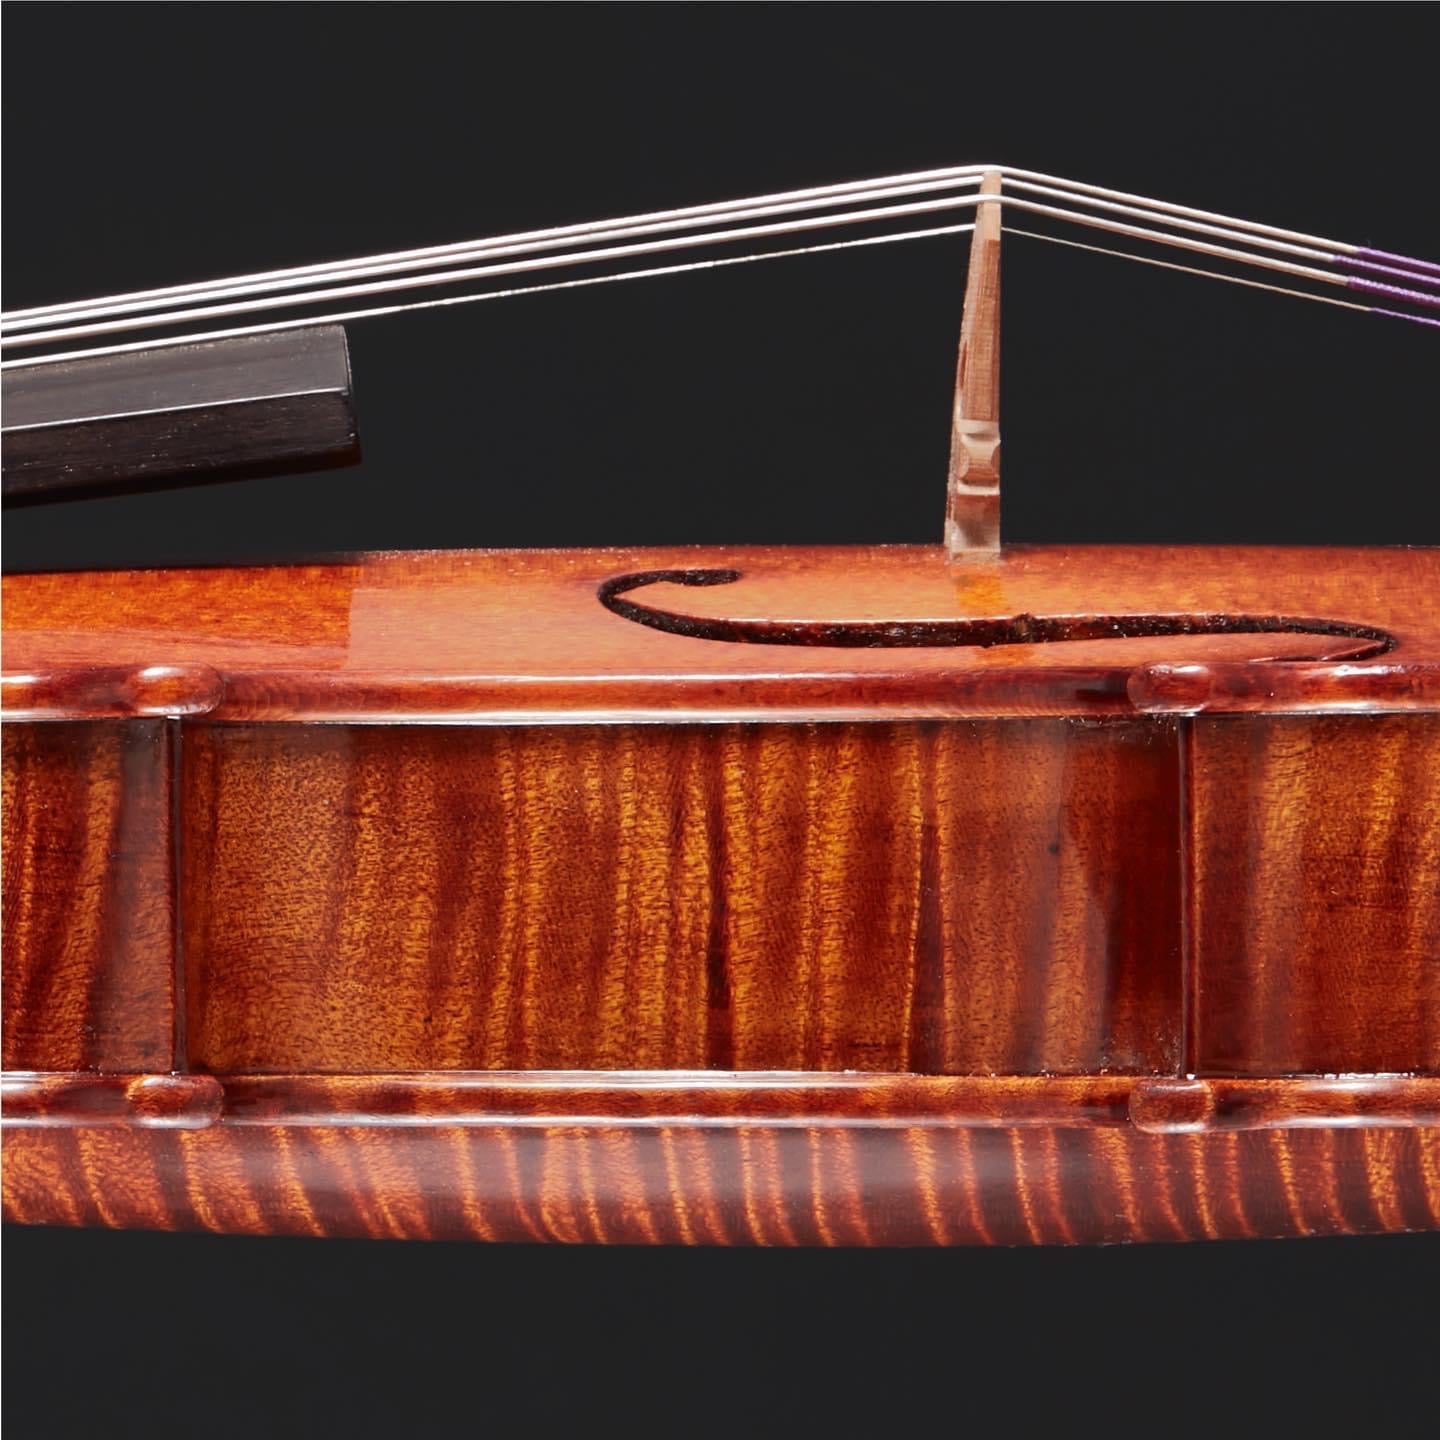 Ruth Obermayer Huberman Granada 2019 Violin